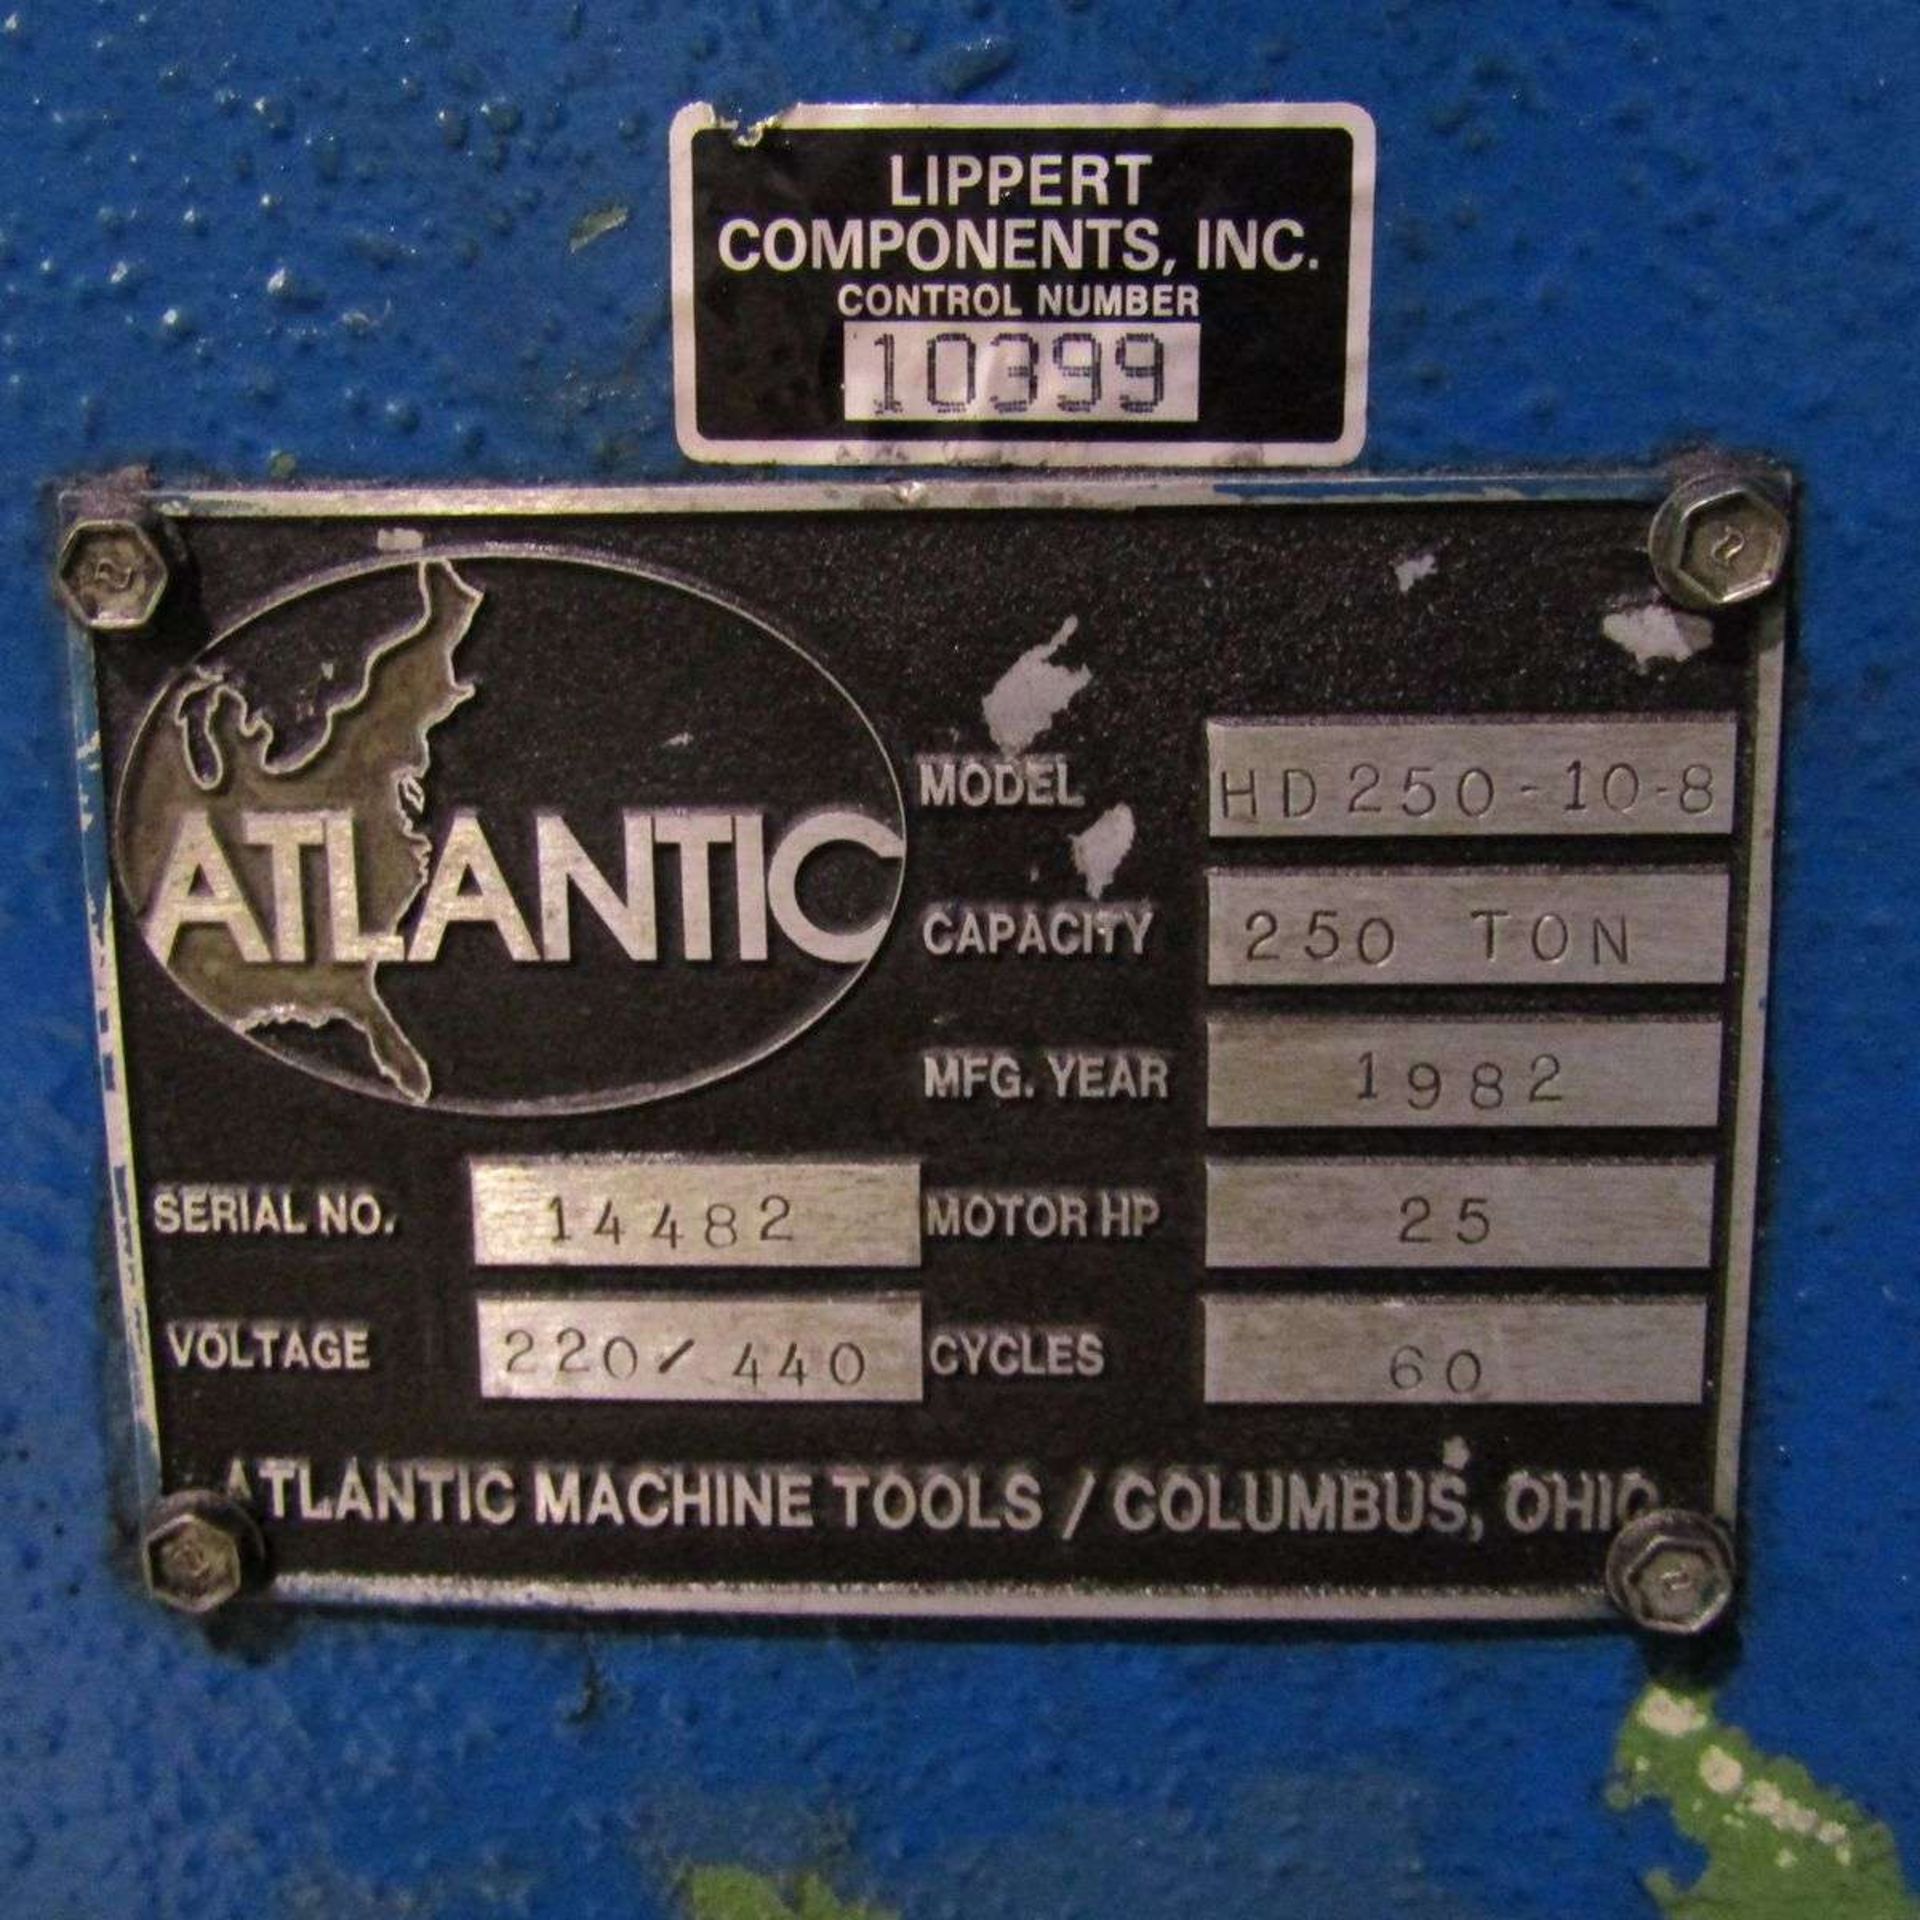 1982 Atlantic HD250-10-8 Press Brake - Image 8 of 8